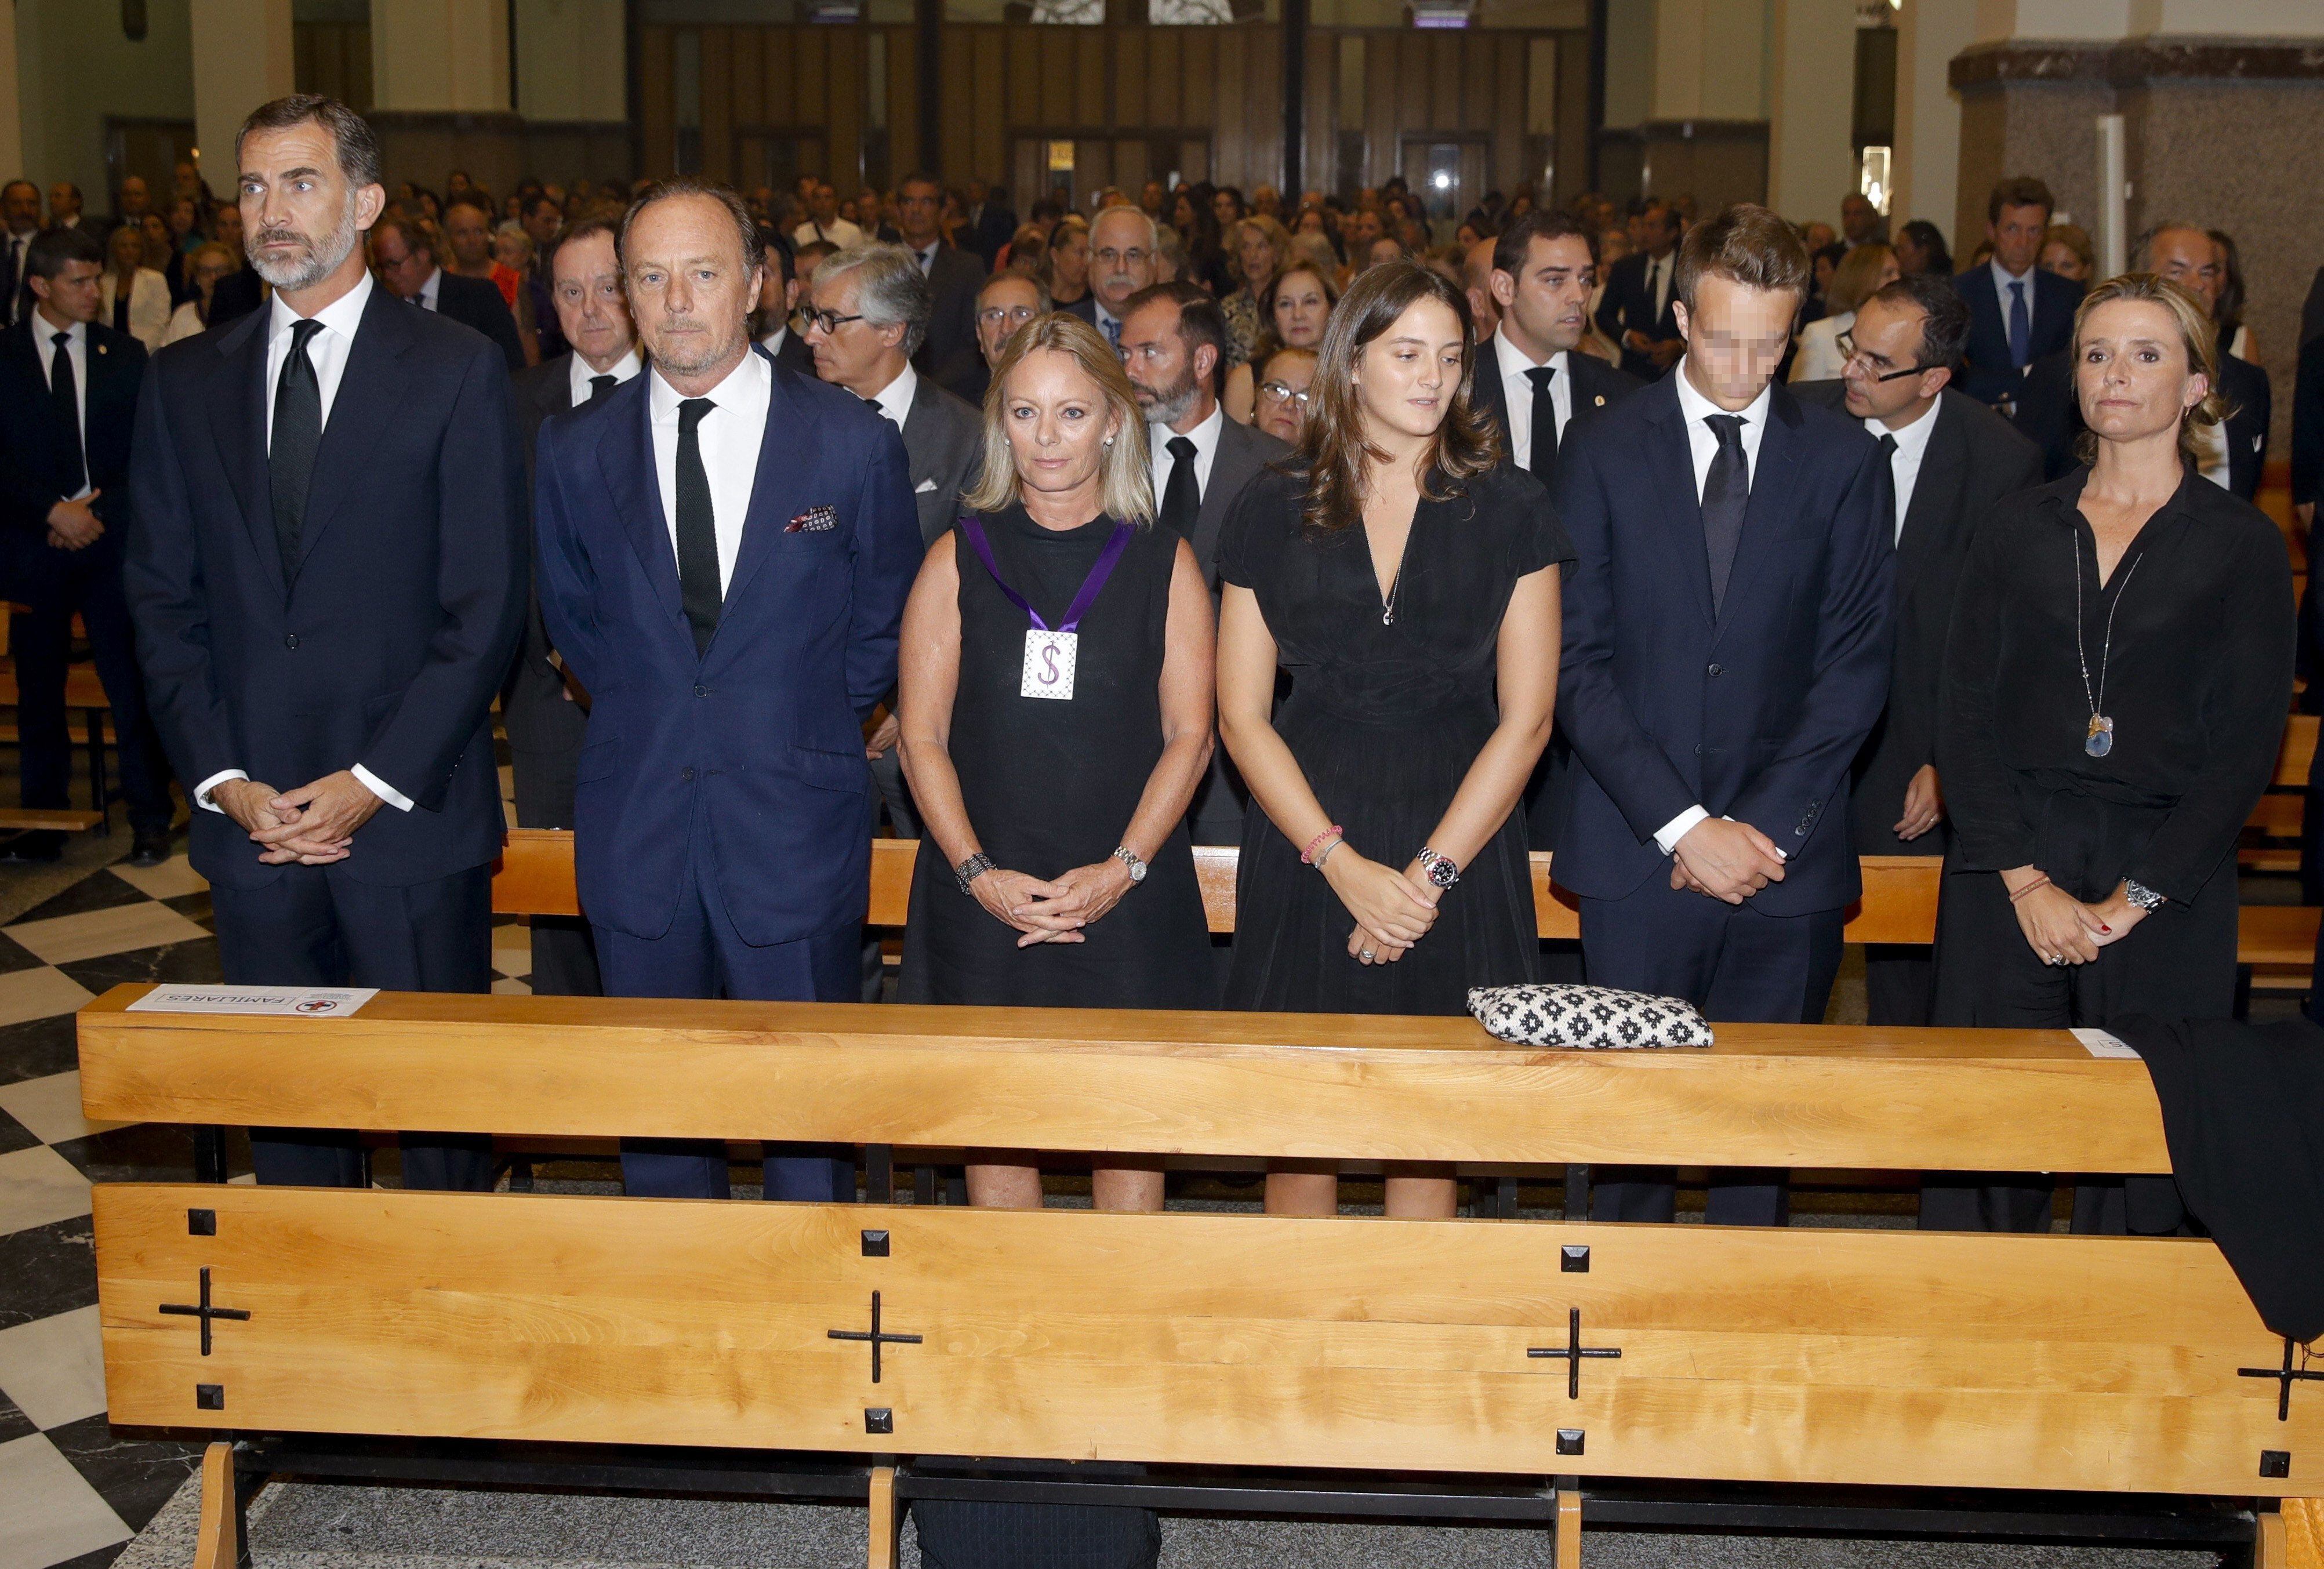 El rey Felipe VI asistió al funeral del duque de Medinaceli, que tuvo lugar el 6 de septiembre de 2016 en Madrid. En la imagen, de izquierda a derecha y junto al Rey: Pablo y Flavia Hohenlohe, hermanos del duque, y sus hijos; Victoria y Alexander, junto a la esposa de Pablo, María del Prado Muguiro.